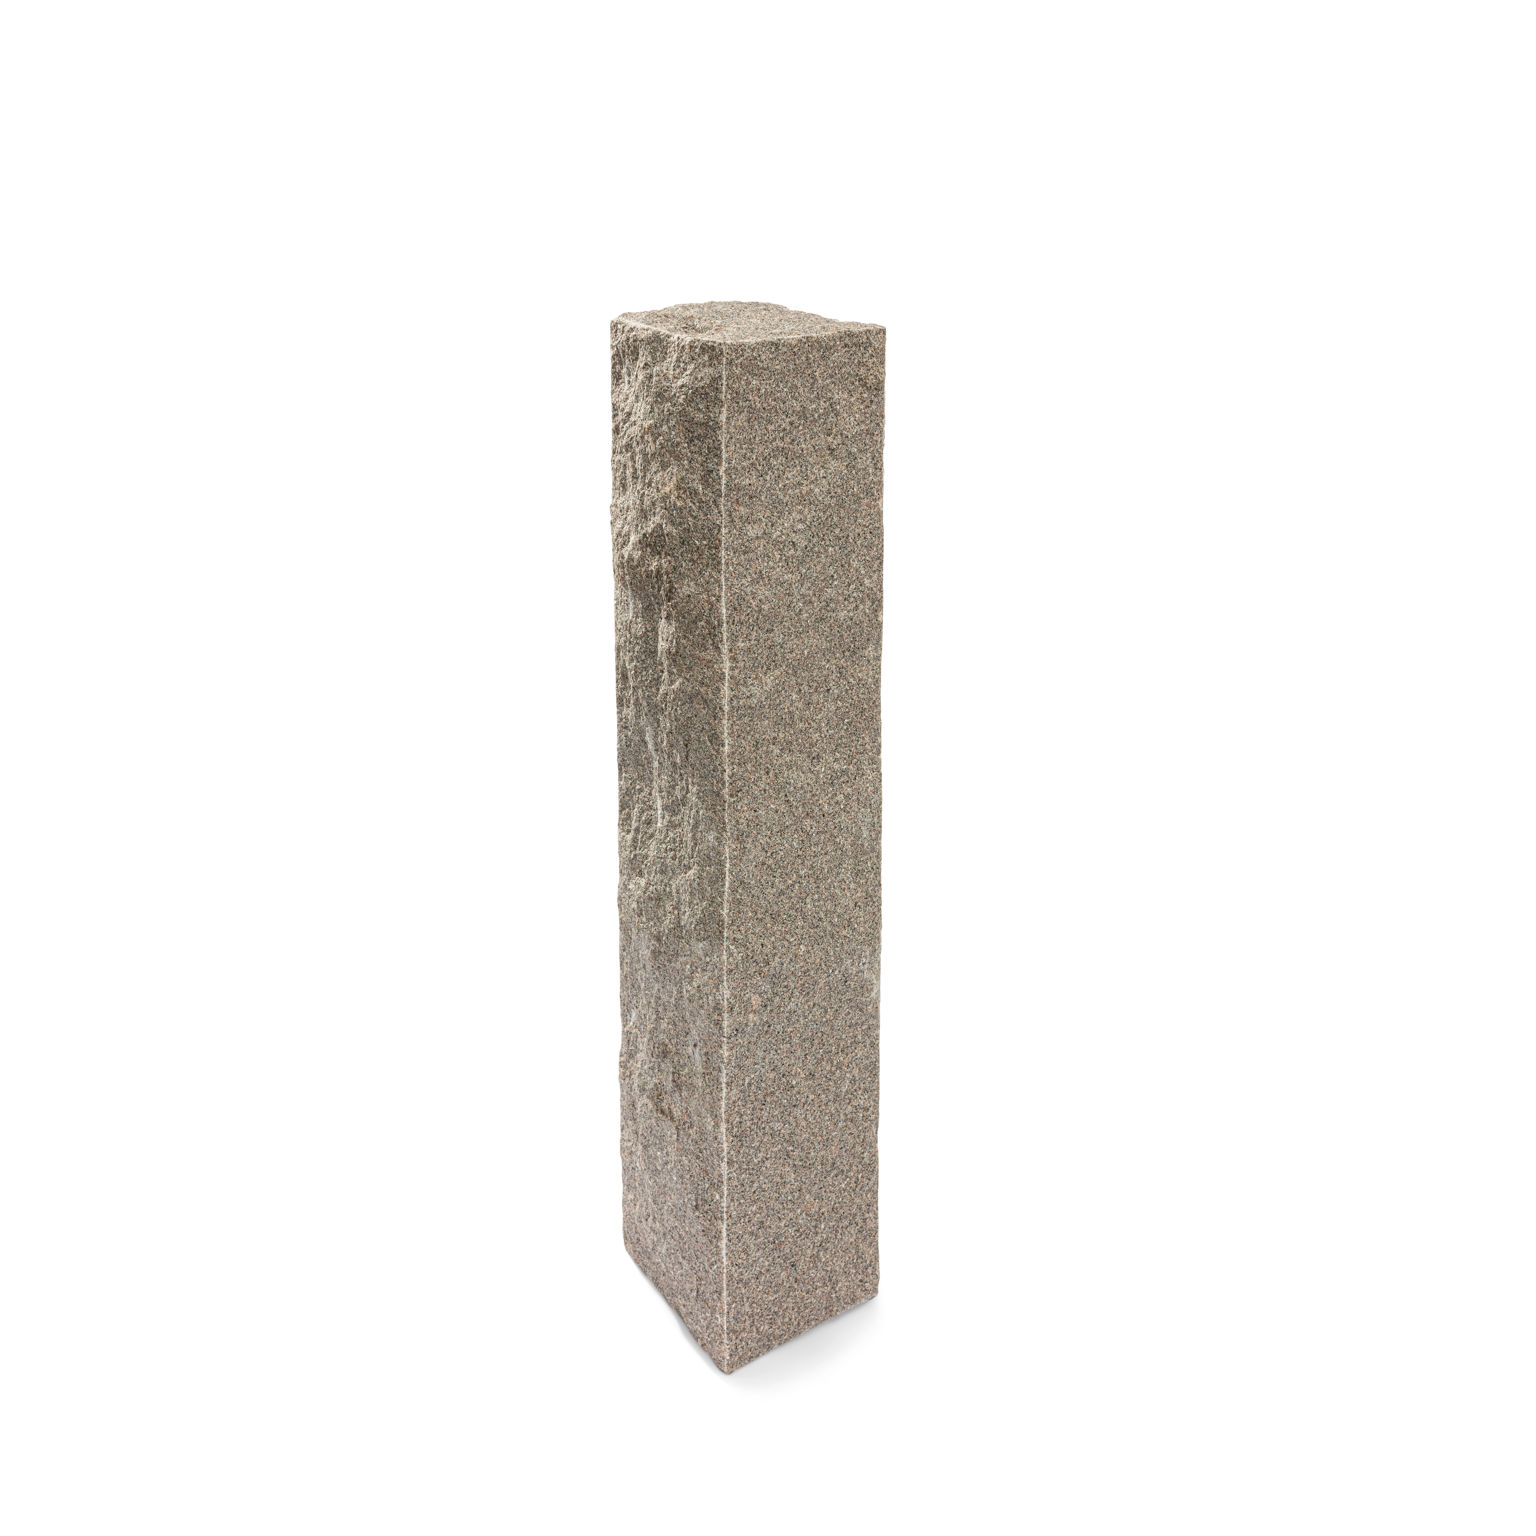 Produktbild på en stolpe i Bohus grå;granit. Stolpen har ett råkilat utförande och mäter 1500x350x350.